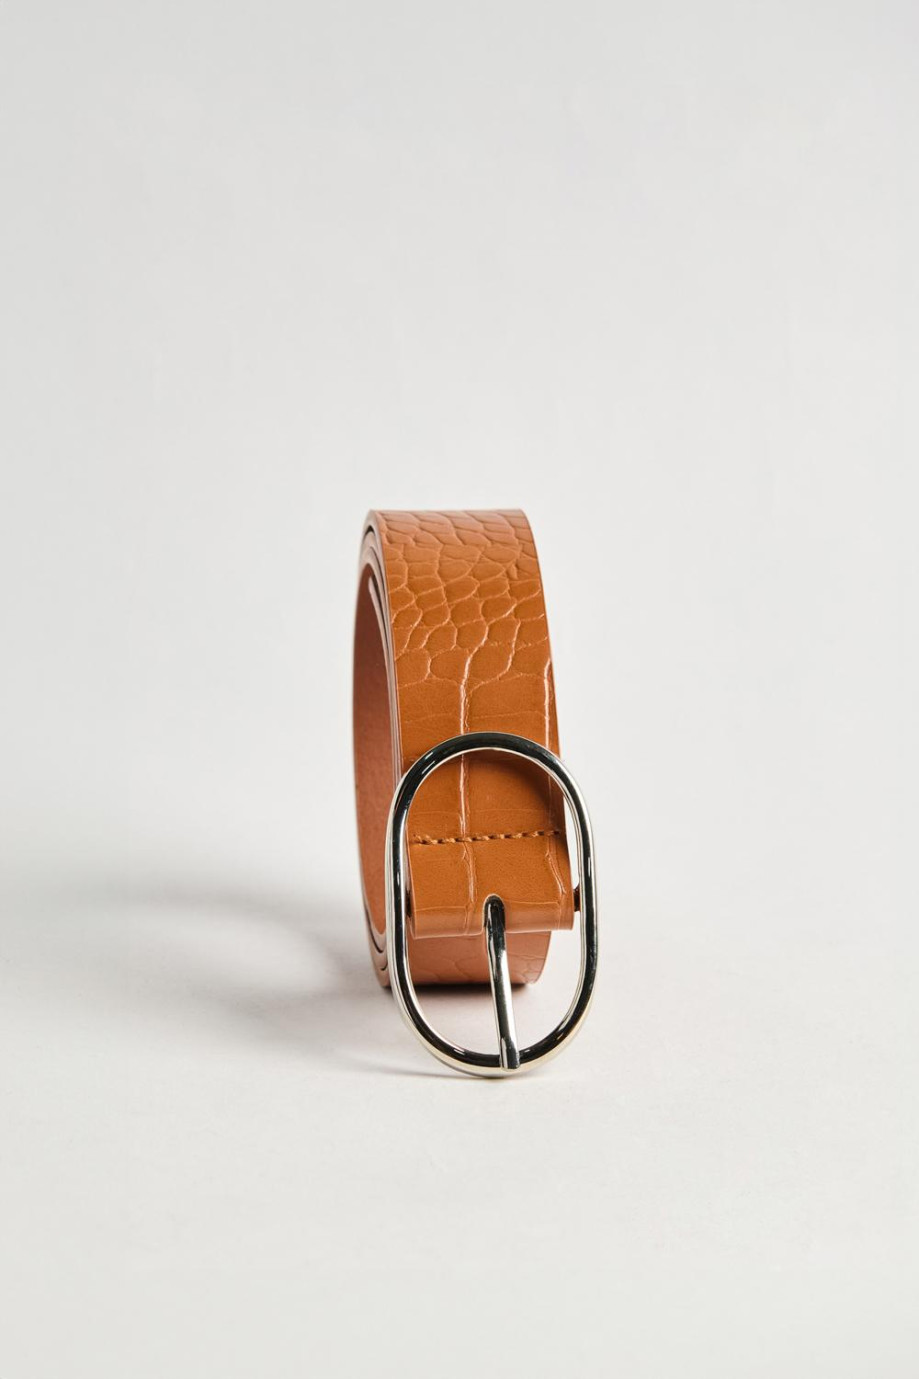 Cinturón femenino en color camel, elaborado en sintético con textura tipo reptil, hebilla metálica ovalada y punta con forma esp